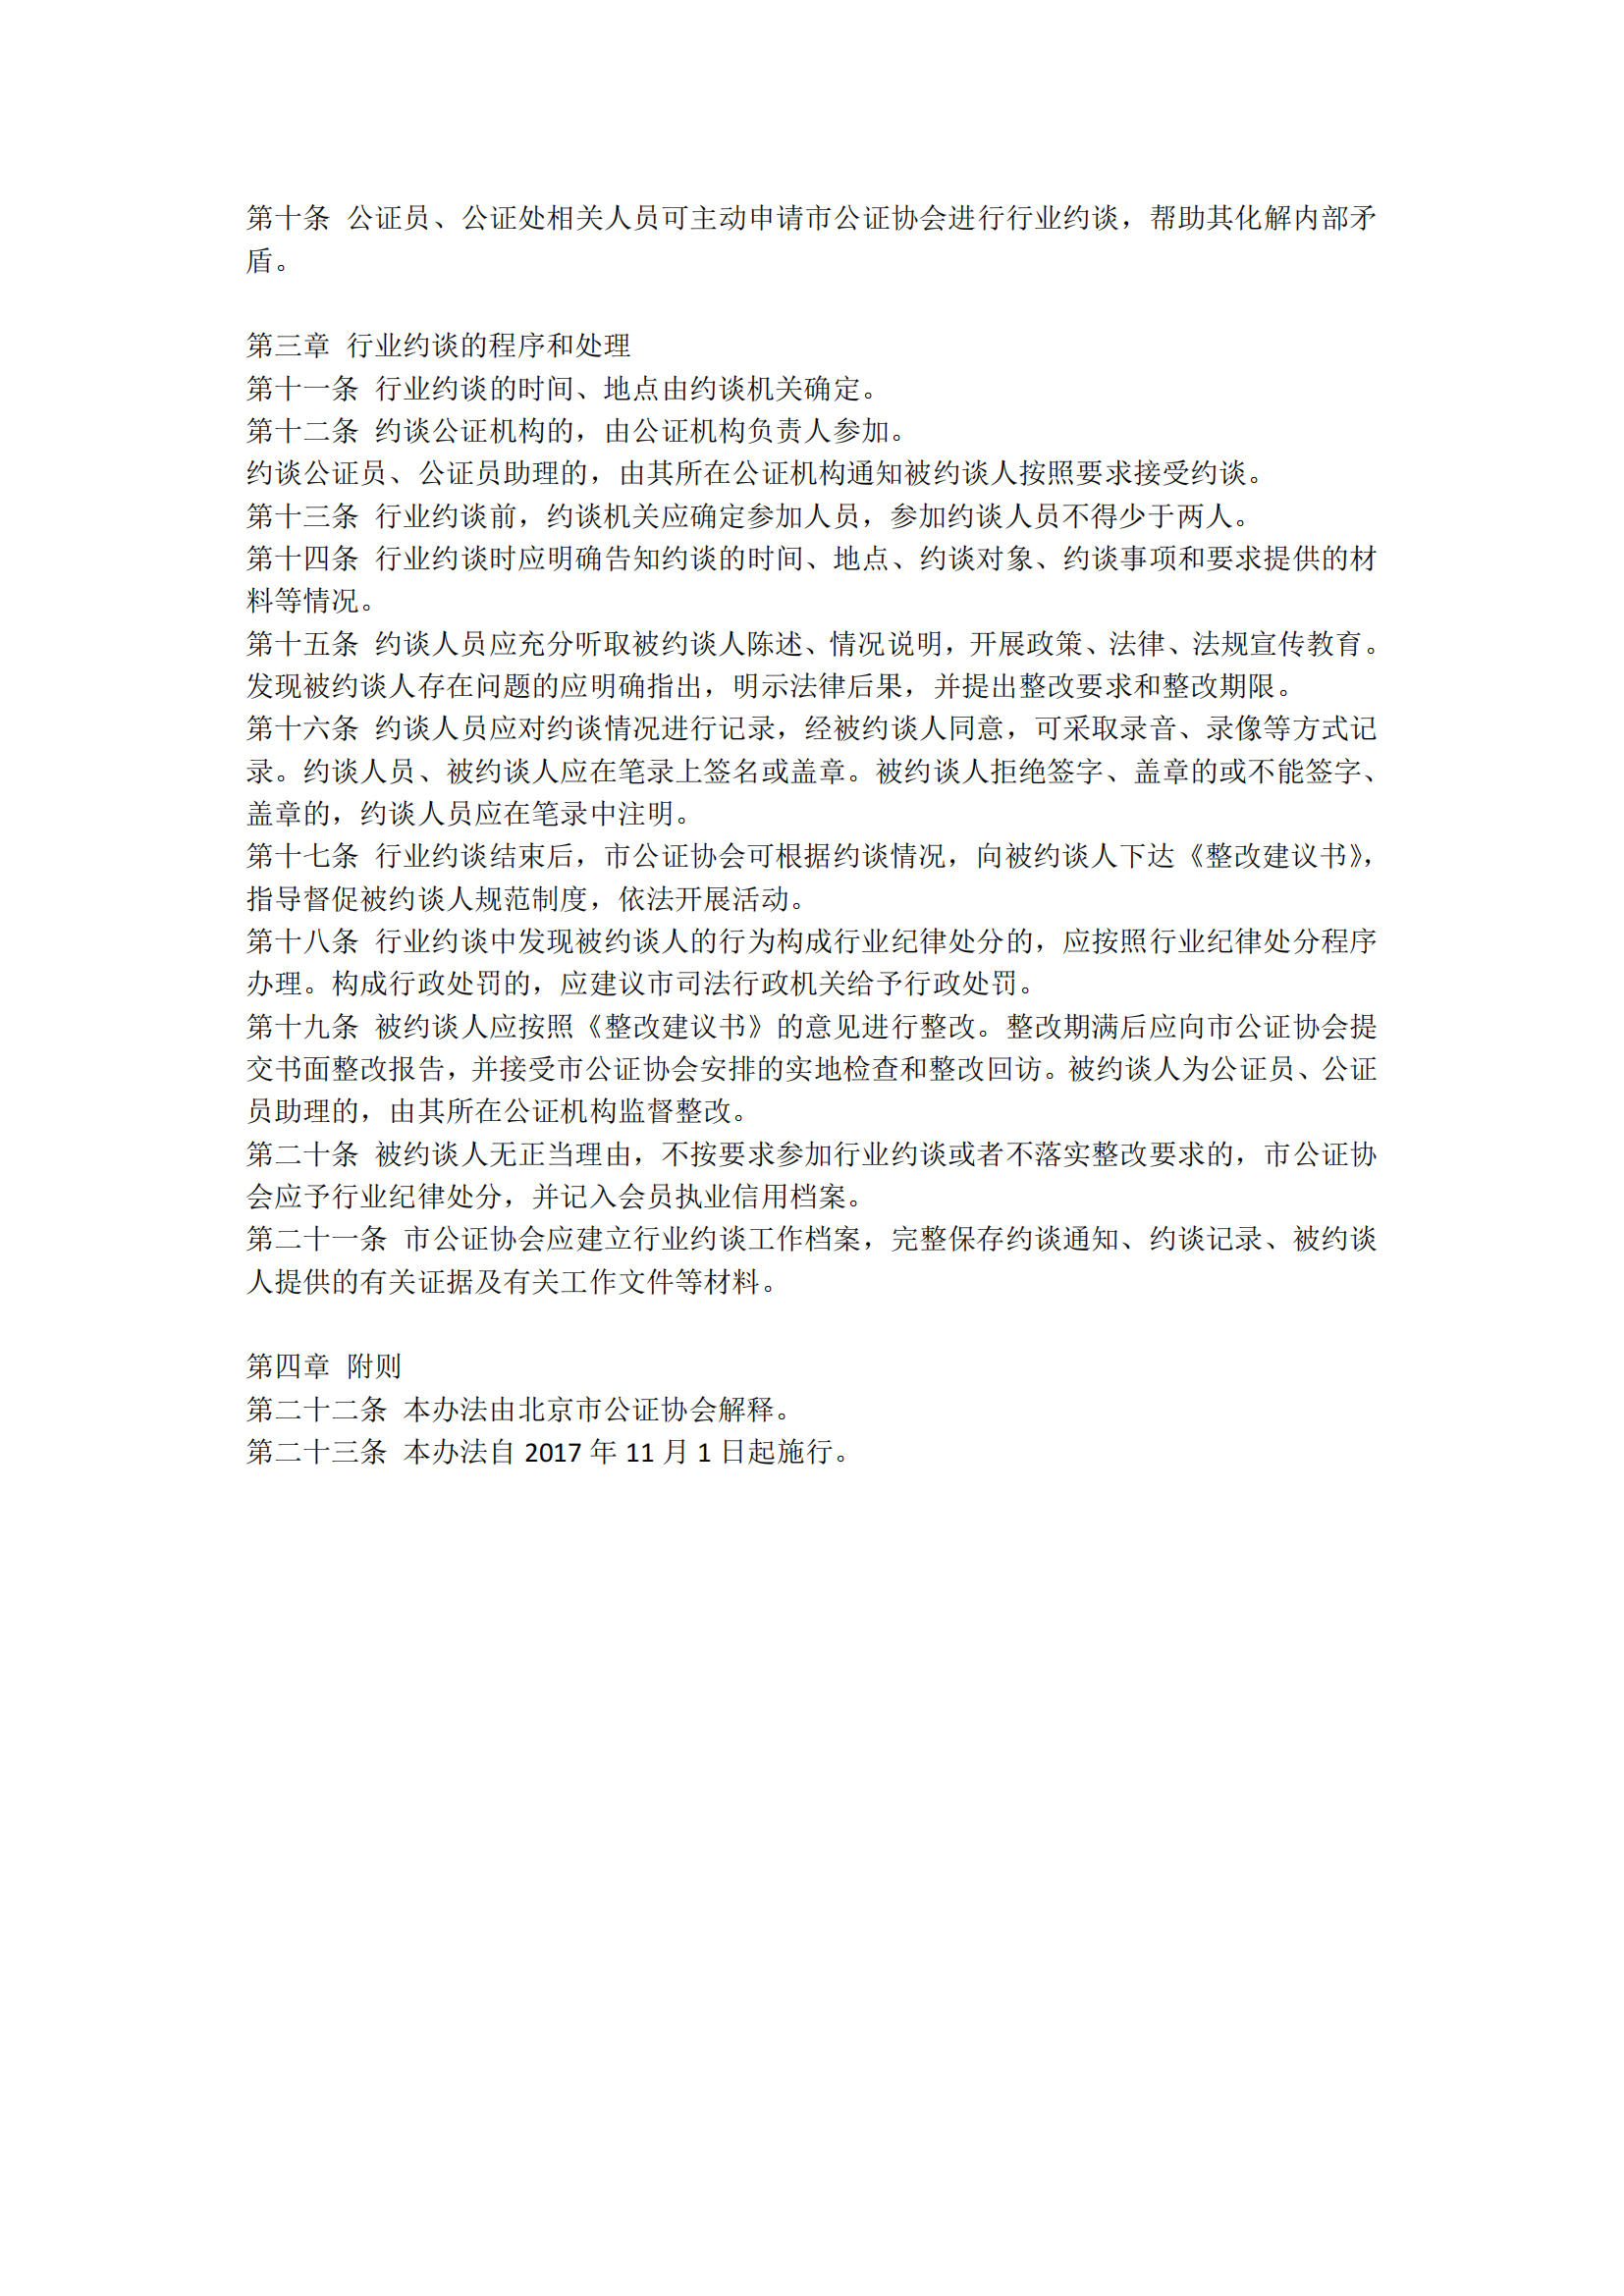 7北京市公证协会关于印发《北京市公证协会行业约谈办法》的通知_01